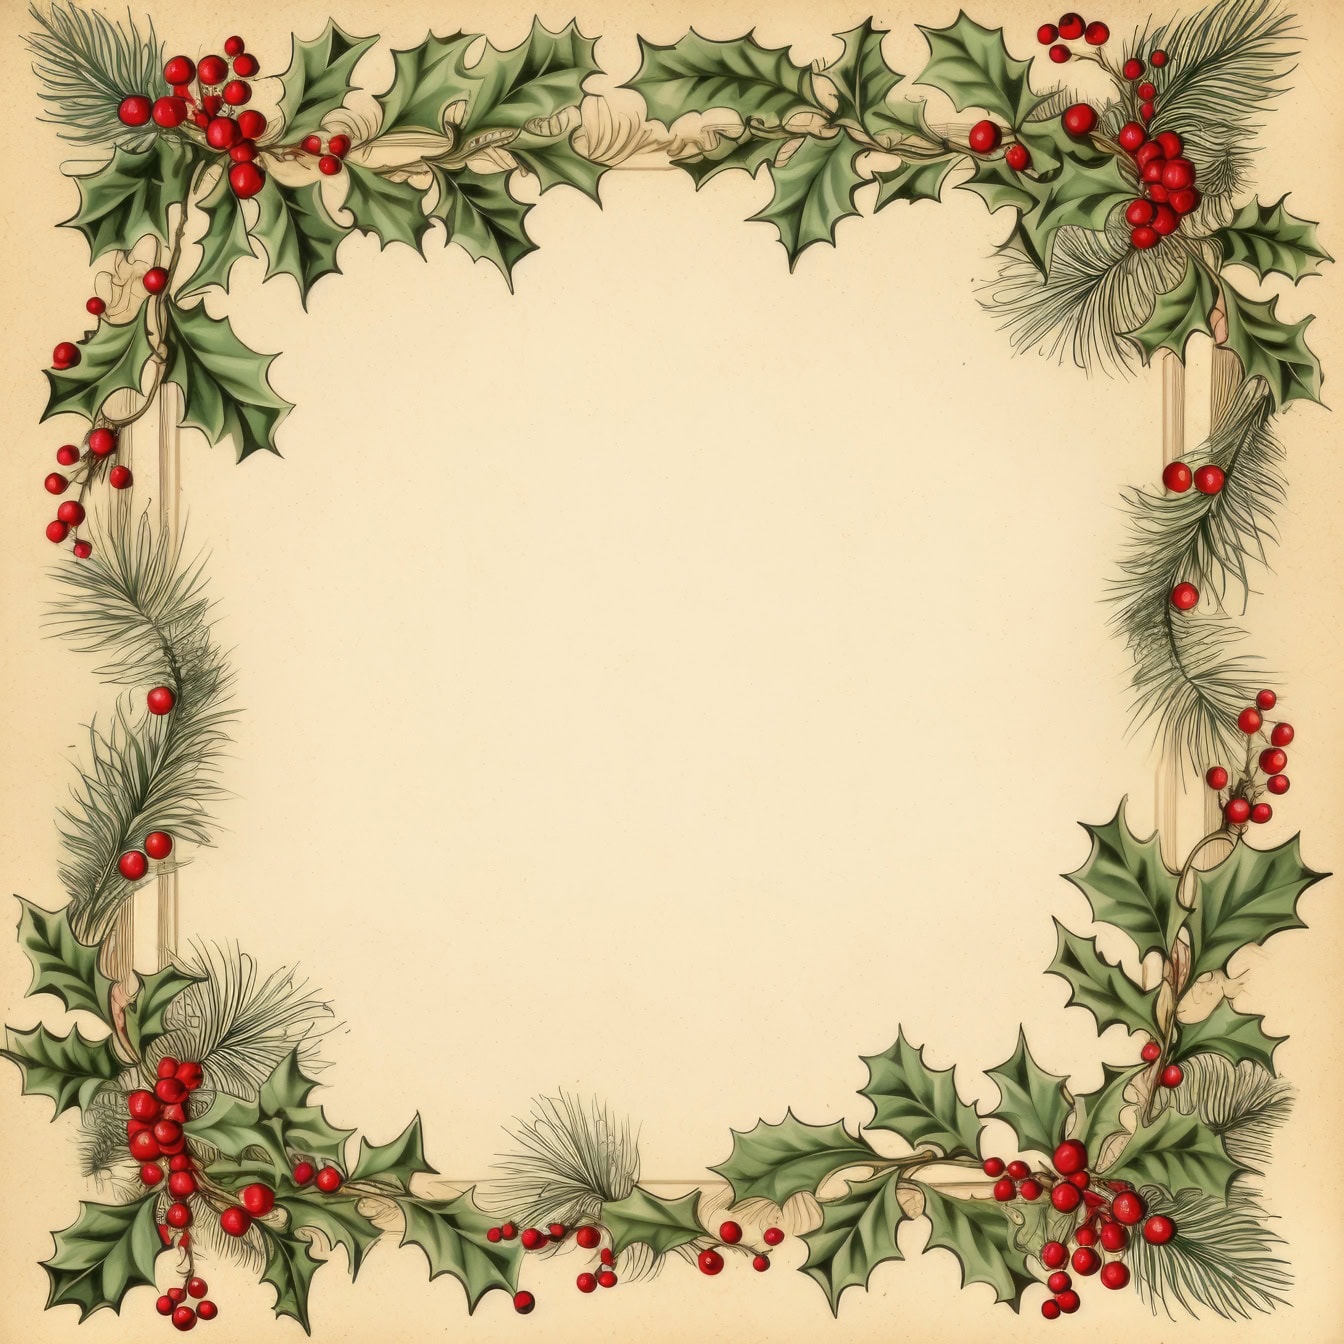 Joulukortti, jossa on kehys holly-seppelettä ja marjoja, täydellinen joulukorttimalli